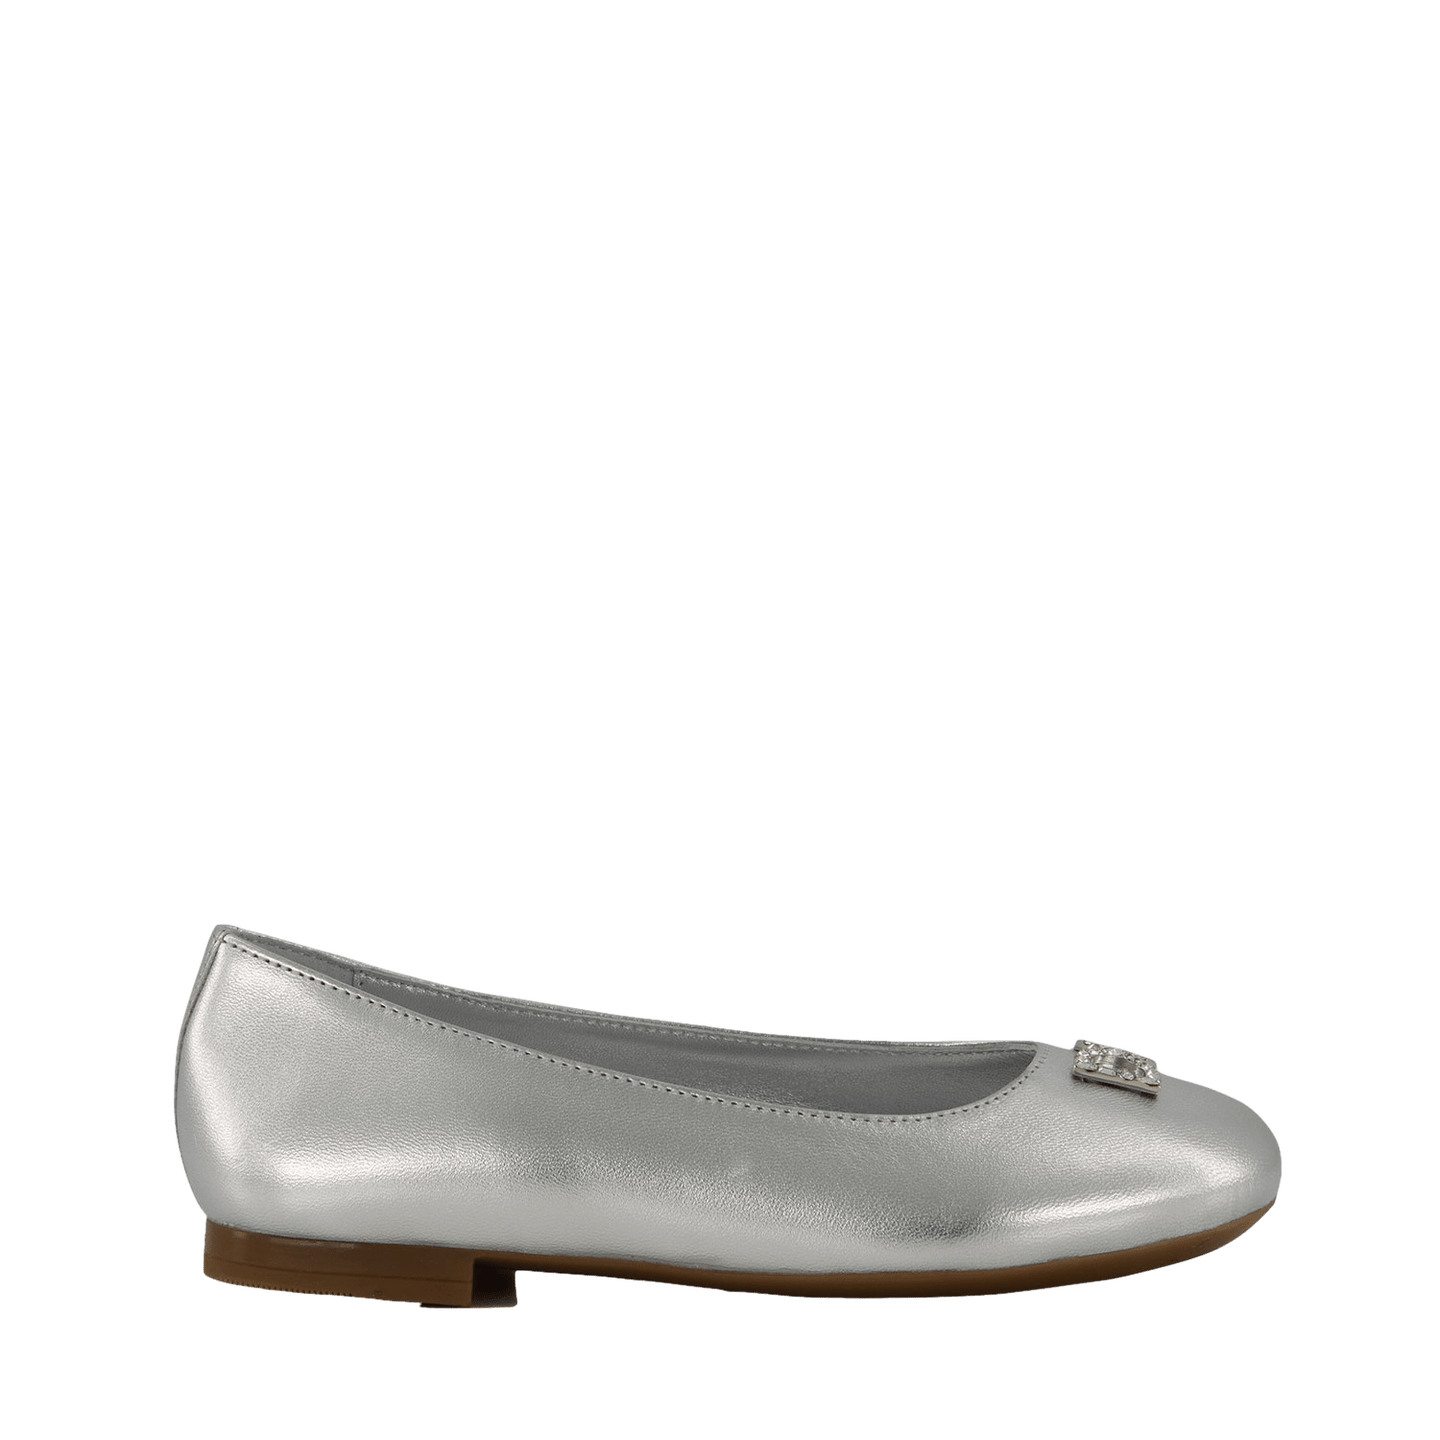 Dolce & Gabbana Kinder Meisjes Schoenen Zilver 27